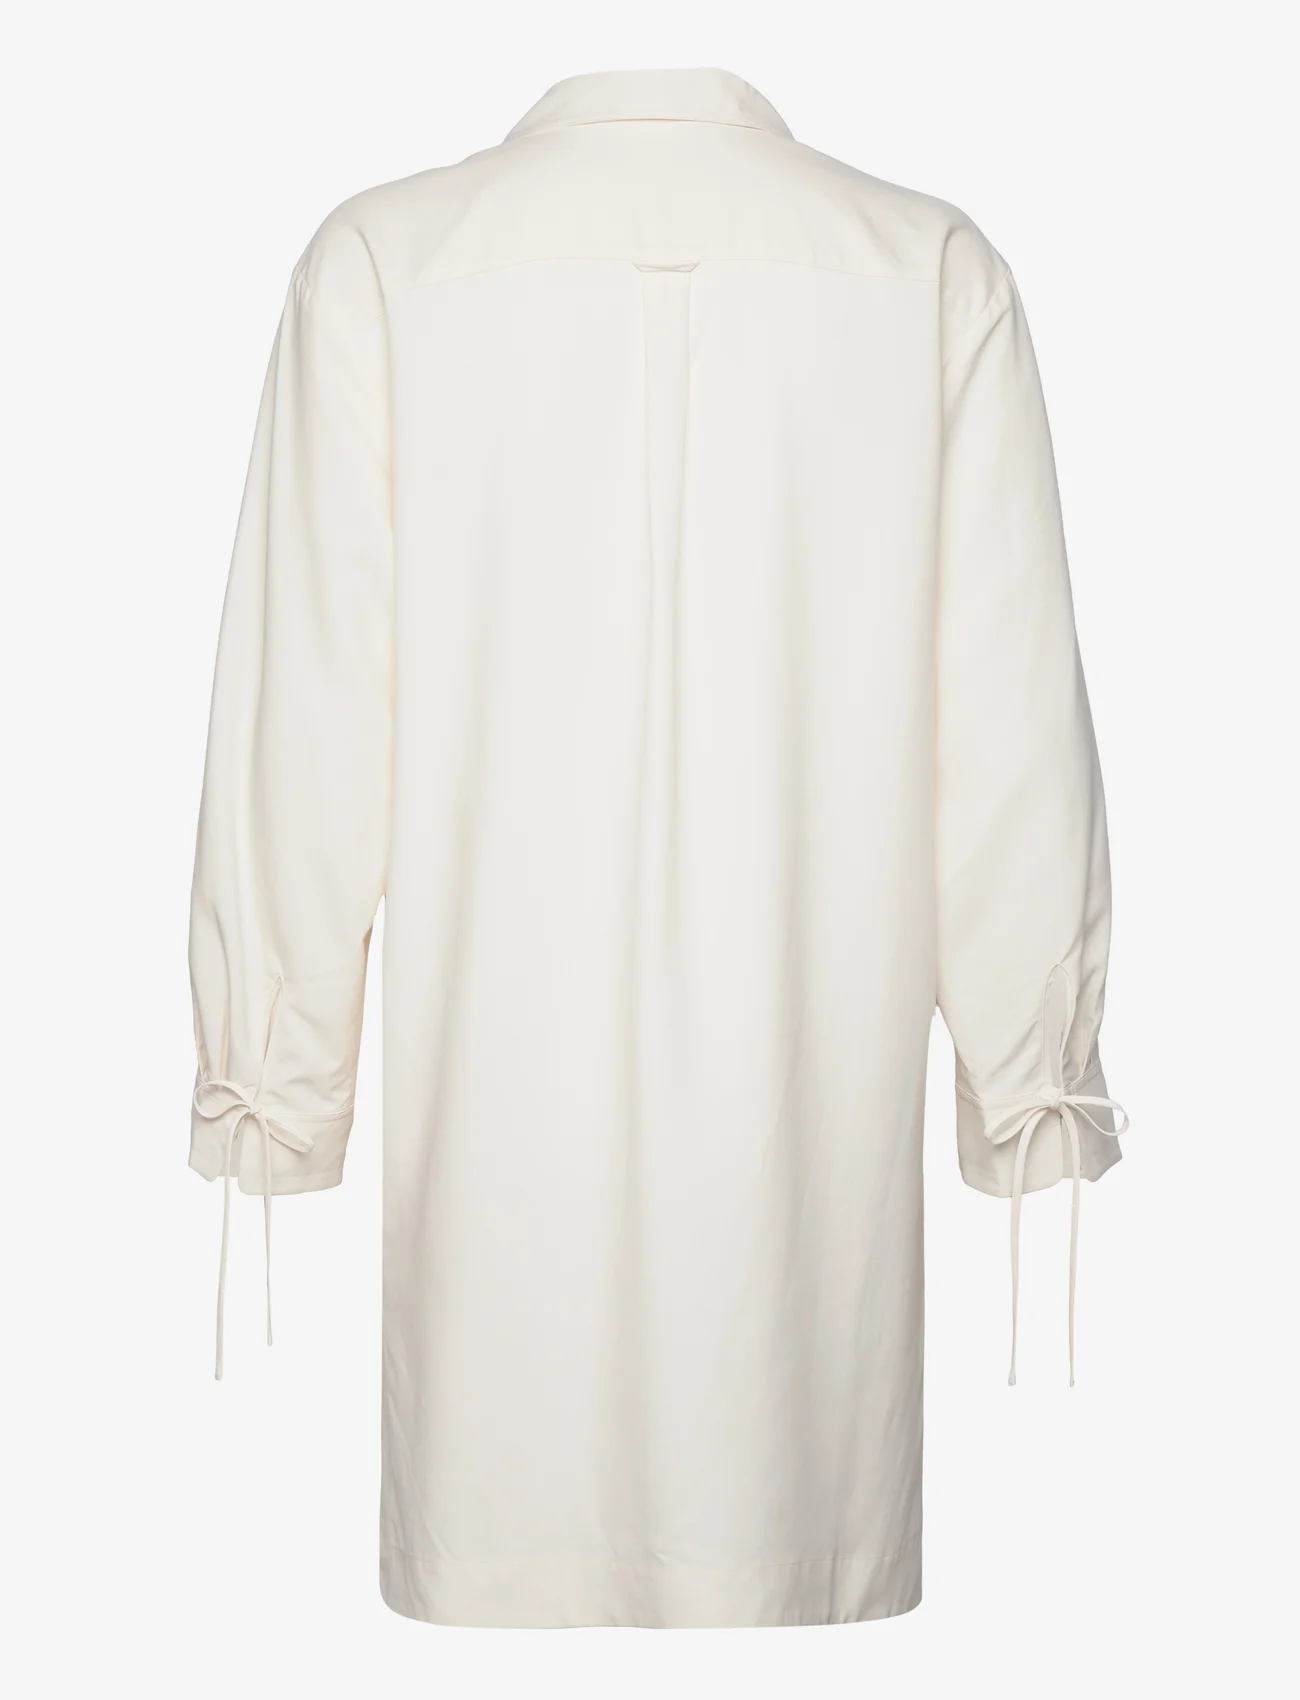 GANT - RELAXED POPVER TUNIC - shirt dresses - eggshell - 1